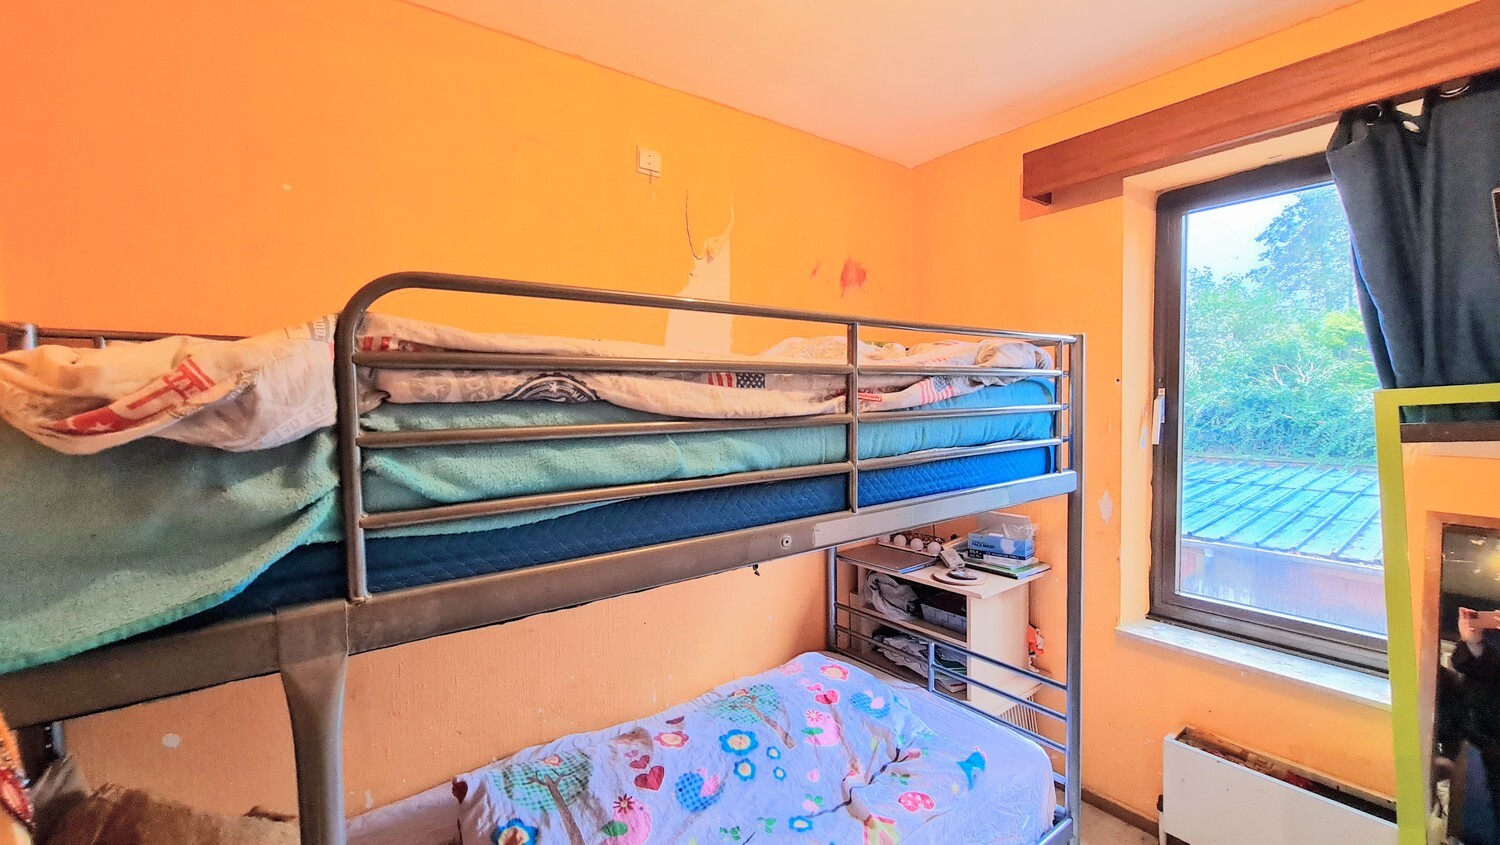 Betaalbaar tweeslaapkamer-appartement in hartje Lanaken 